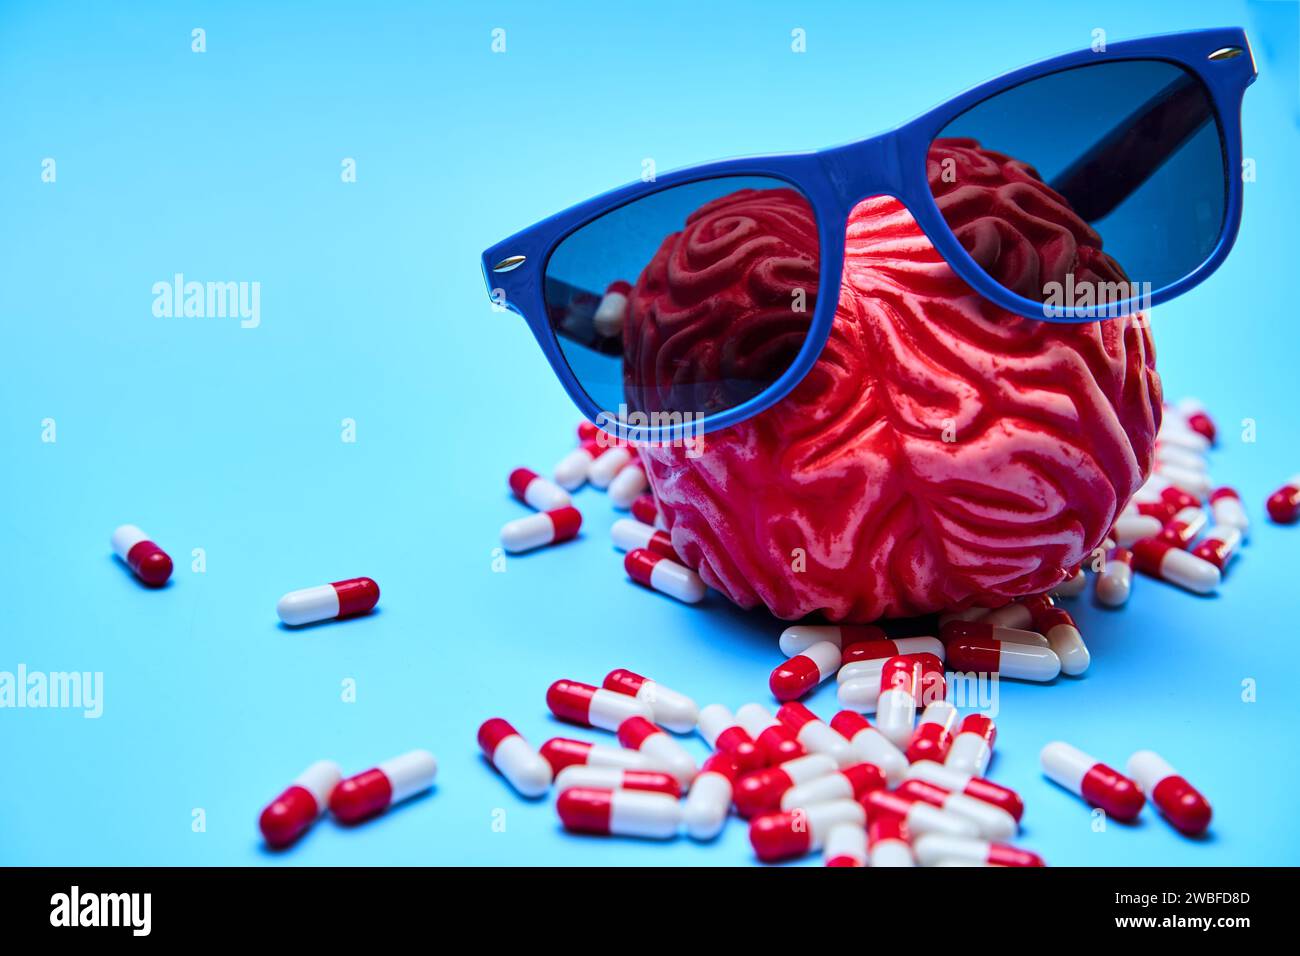 Rotes Gummigehirn mit Sonnenbrille umgeben von weißen und roten Kapseln auf blauer Oberfläche. Migräne- und Kopfschmerz-Konzept. Stockfoto